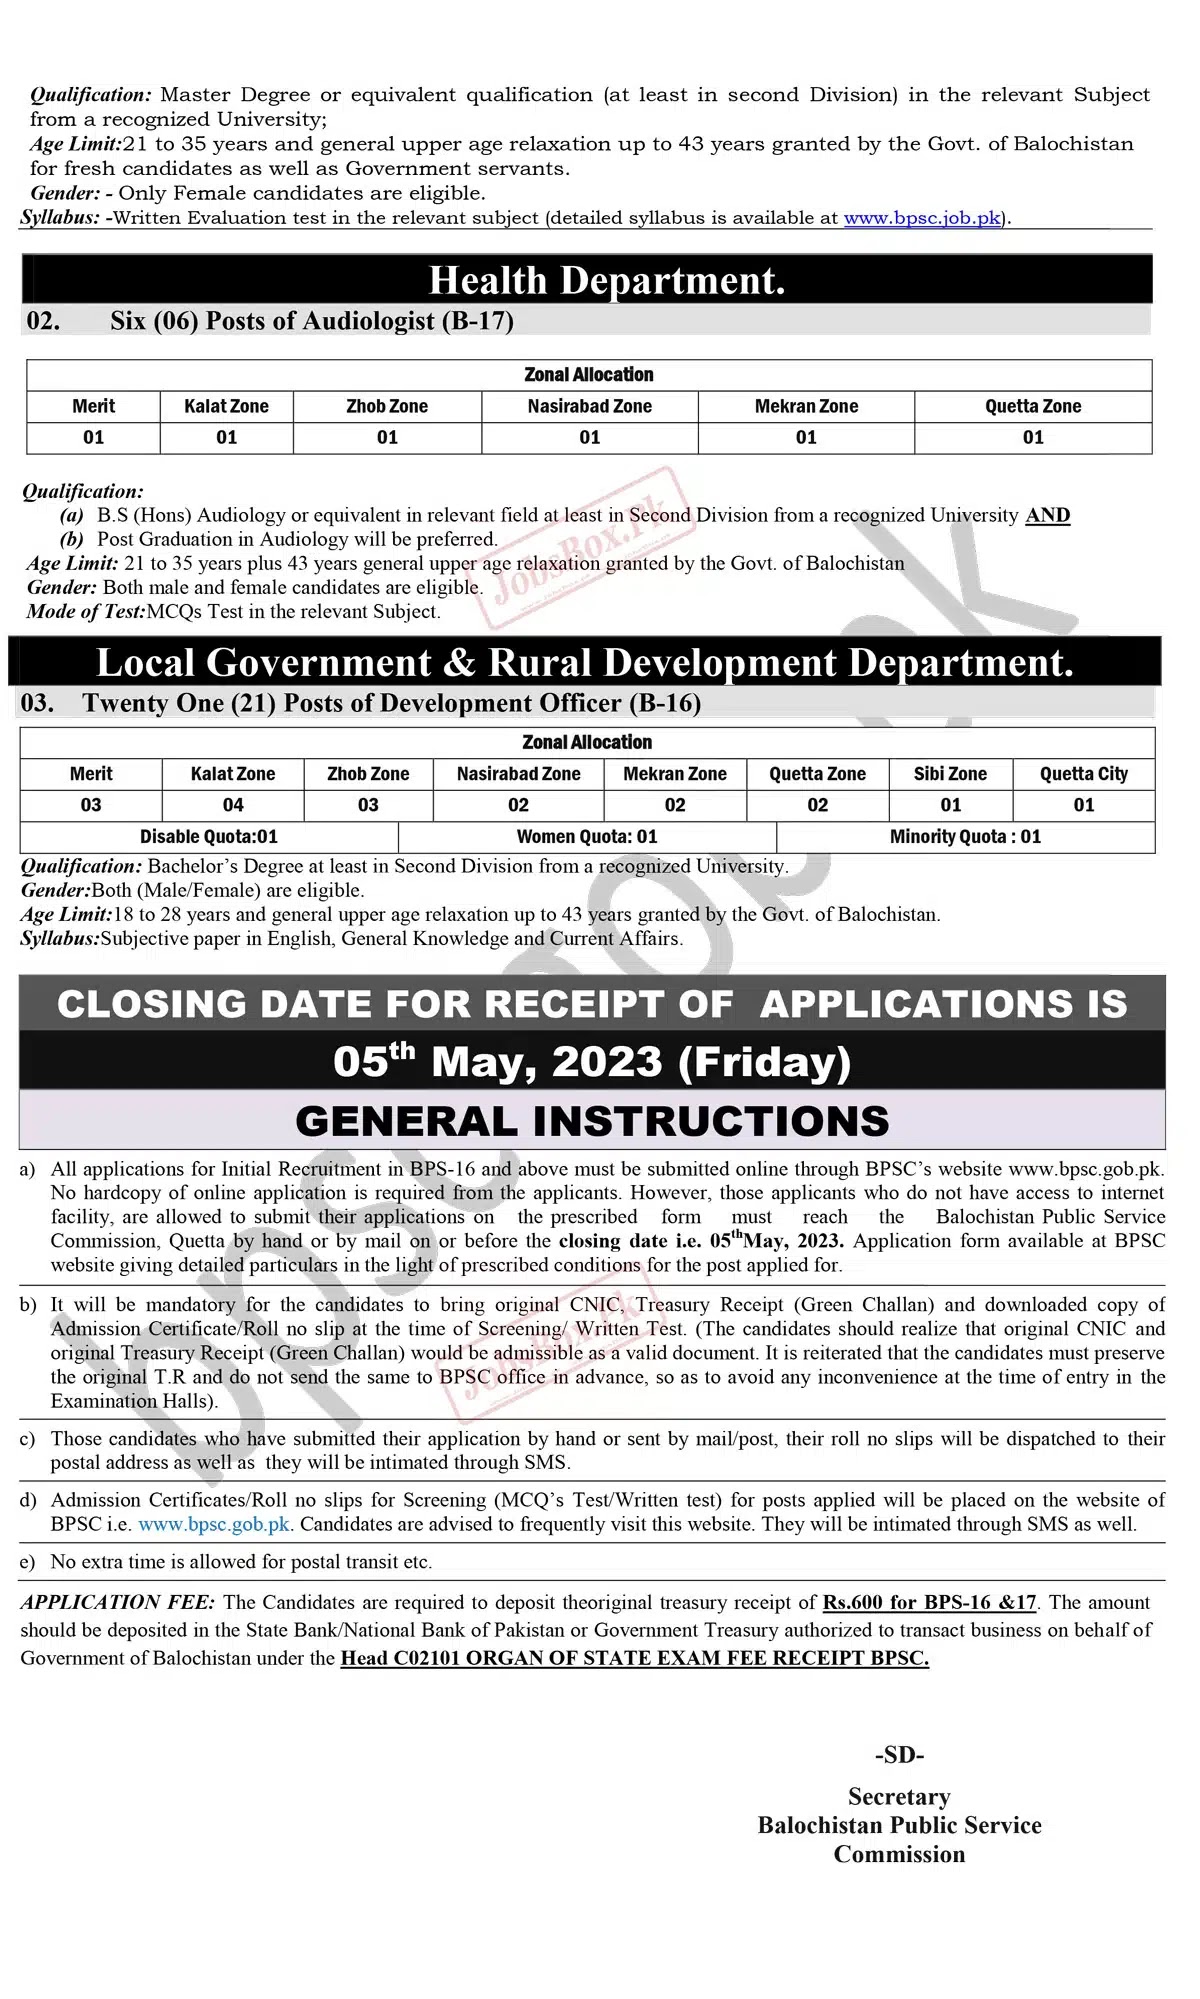 Balochistan Public Service Commission BPSC Jobs 2023 Latest Advertisement